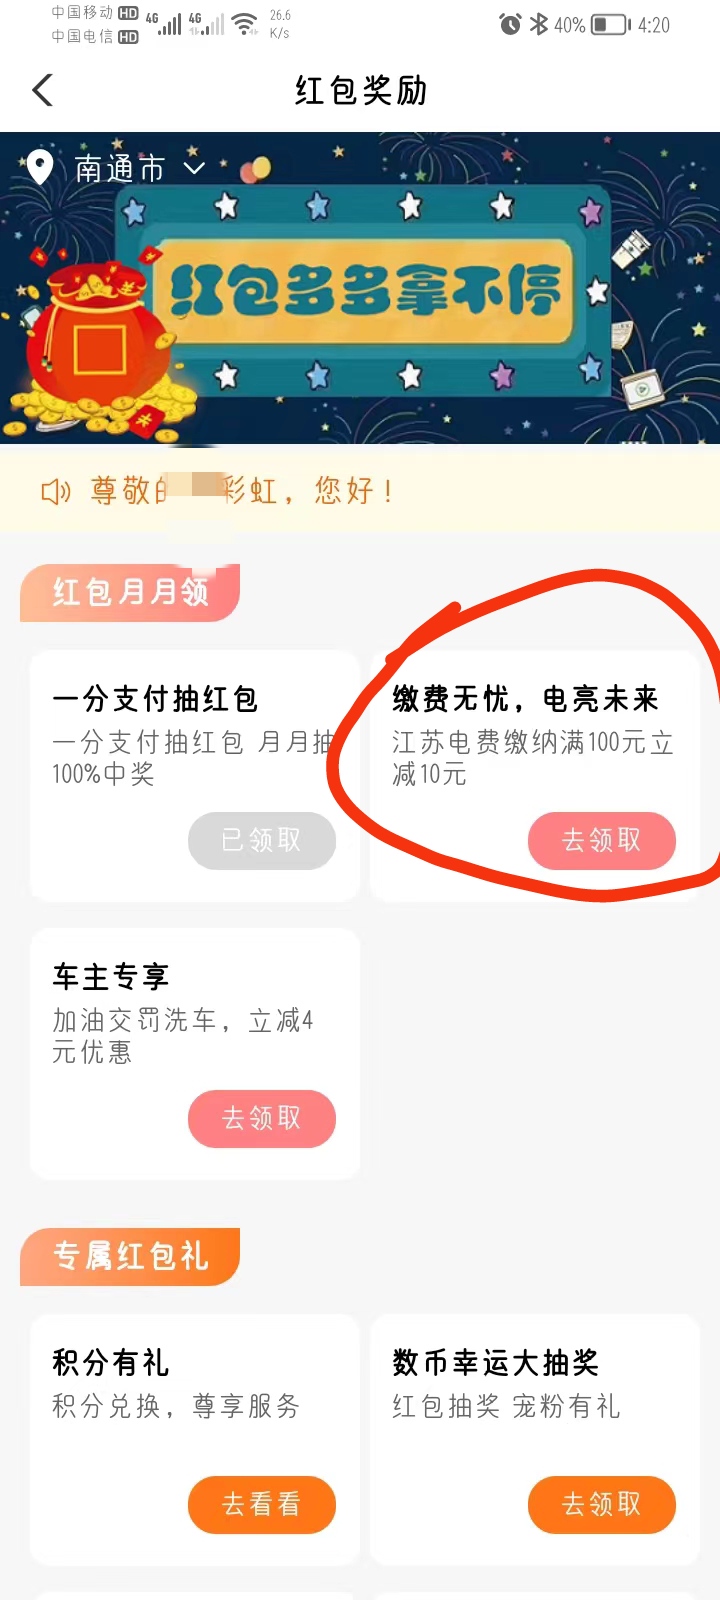 【虚拟卡券】农行江苏用户领10电费券了_福利线报